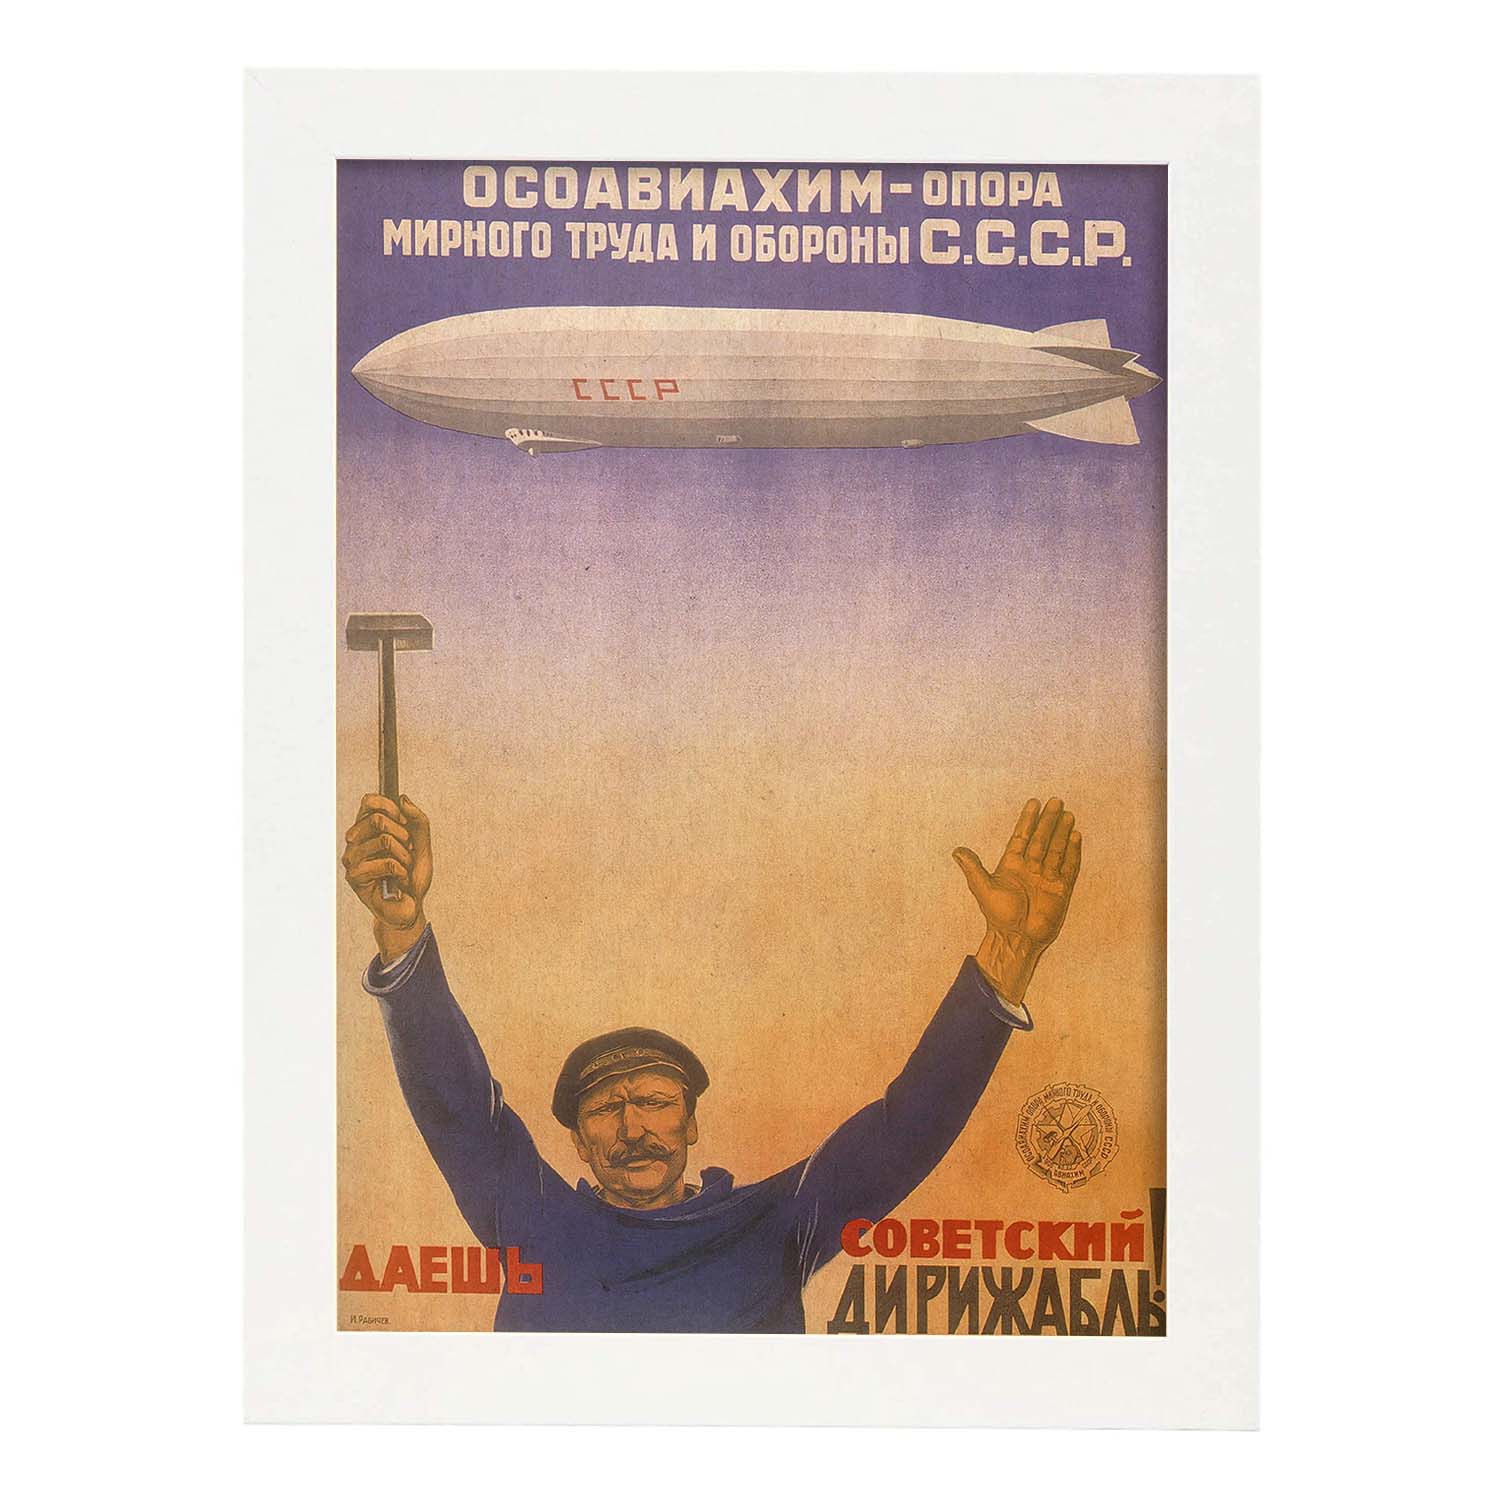 Poster vintage. Cartel vintage Union Sovietica. "Labor y debensa".-Artwork-Nacnic-A4-Marco Blanco-Nacnic Estudio SL